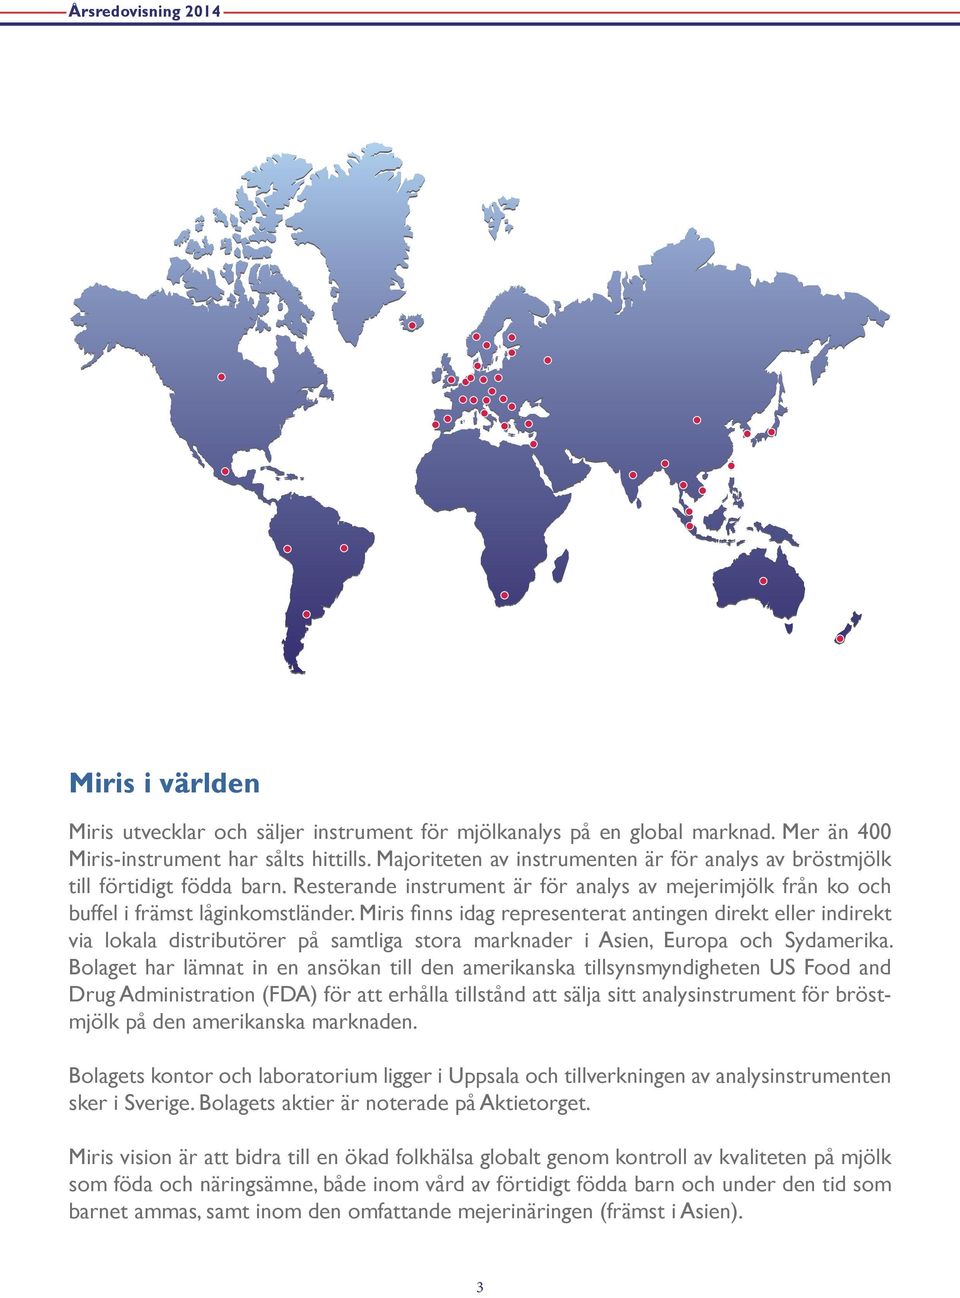 Miris finns idag representerat antingen direkt eller indirekt via lokala distributörer på samtliga stora marknader i Asien, Europa och Sydamerika.